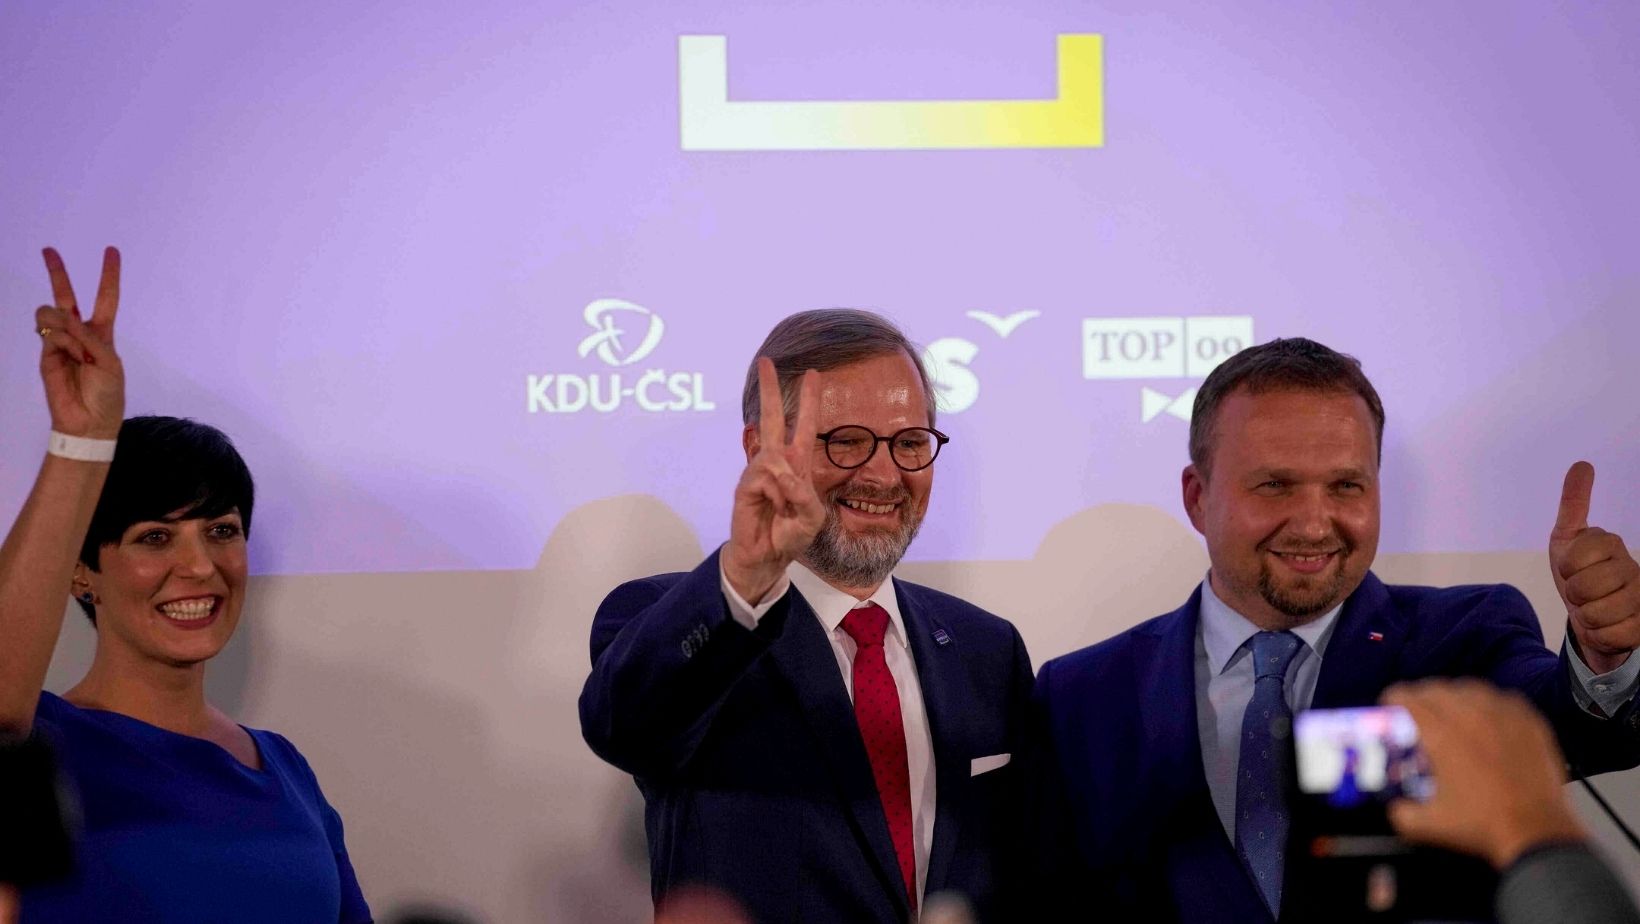 Czech Election 2021